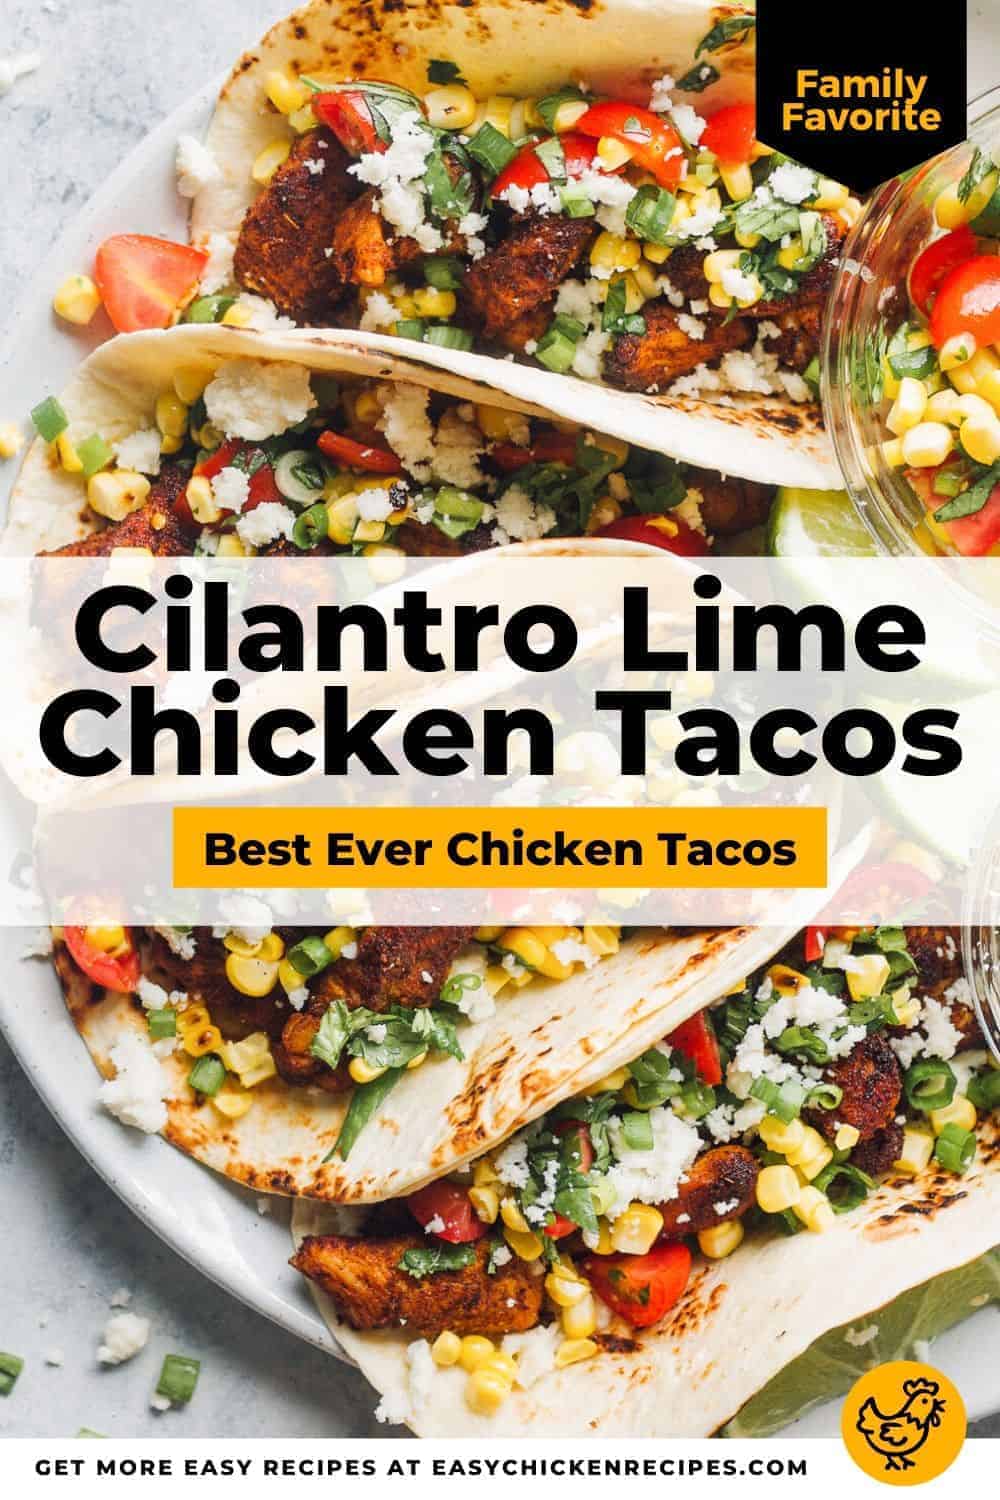 Cilantro Lime Chicken Tacos - Marinated Chicken Tacos Recipe - VIDEO!